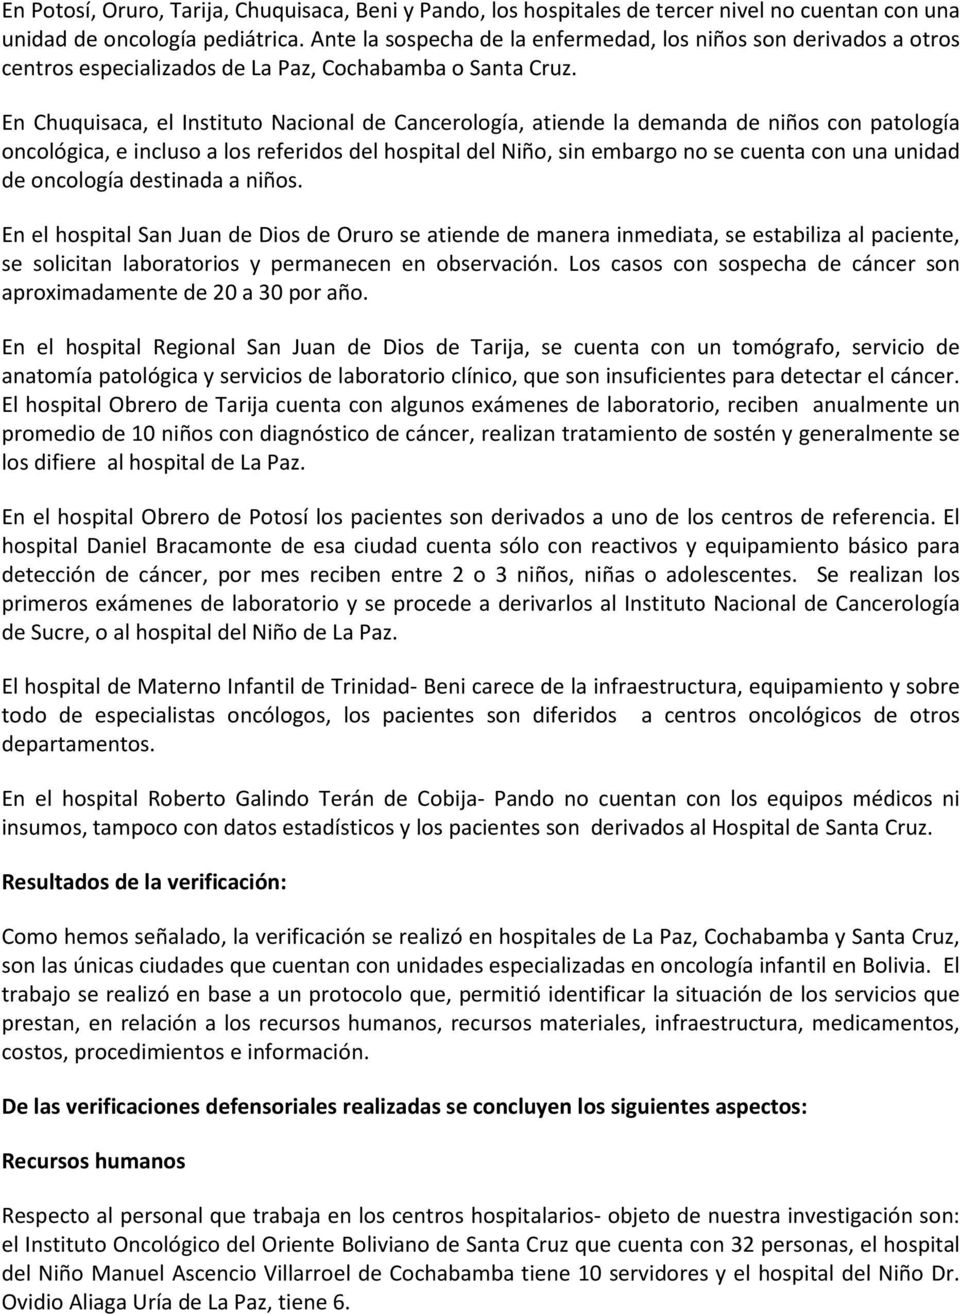 En Chuquisaca, el Instituto Nacional de Cancerología, atiende la demanda de niños con patología oncológica, e incluso a los referidos del hospital del Niño, sin embargo no se cuenta con una unidad de